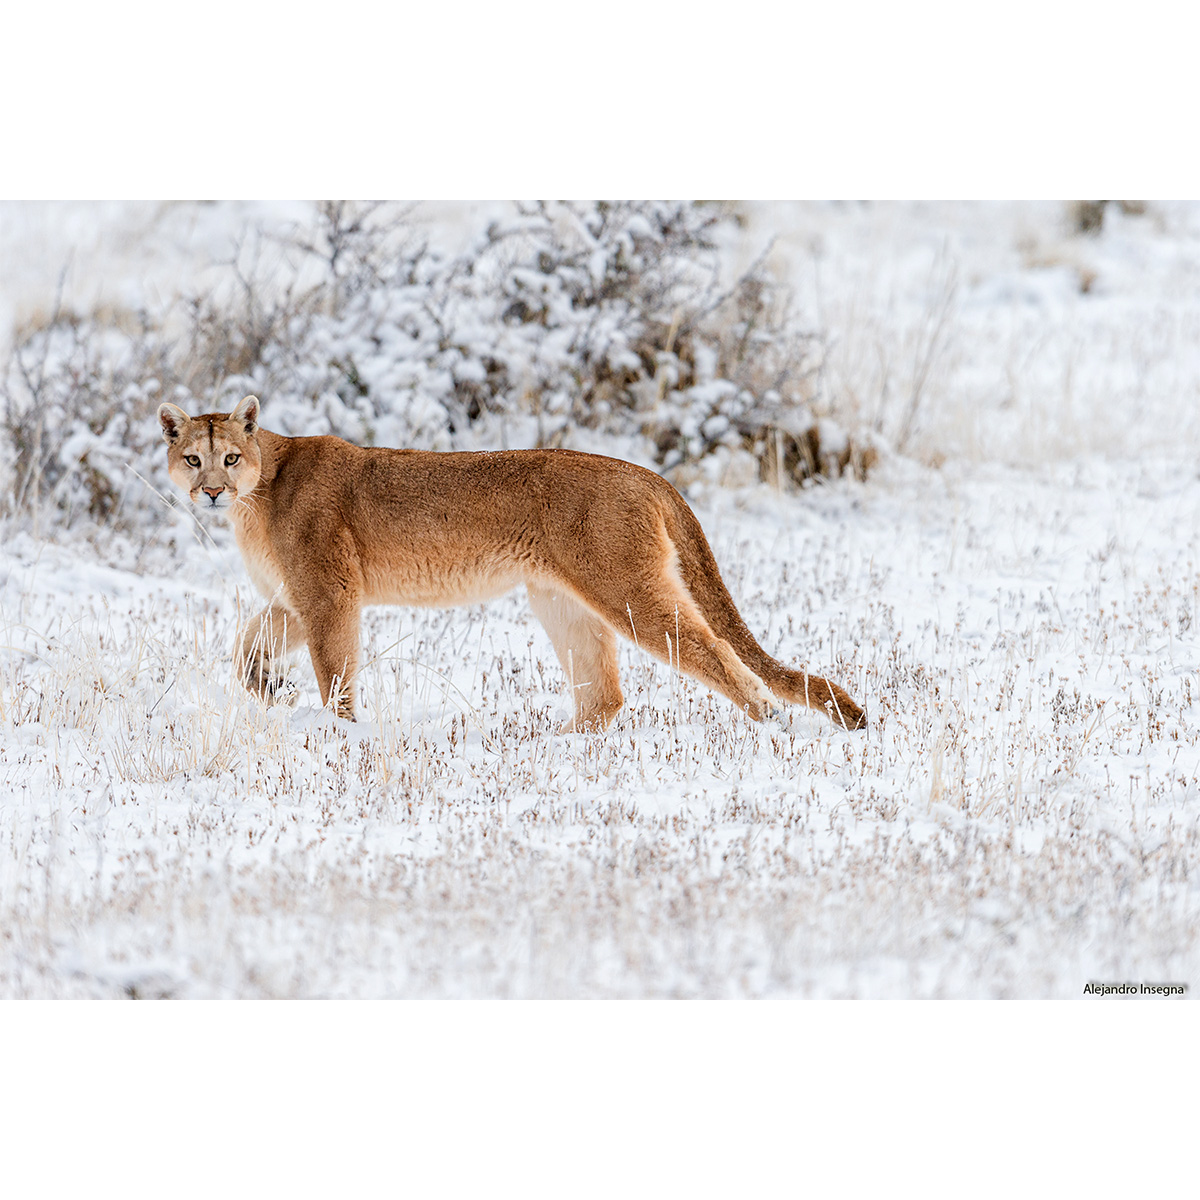 Как отличить пума. Puma concolor anthonyi. Пума в Торрес дель Пайне. Alpine cougar (горный Кугуар).